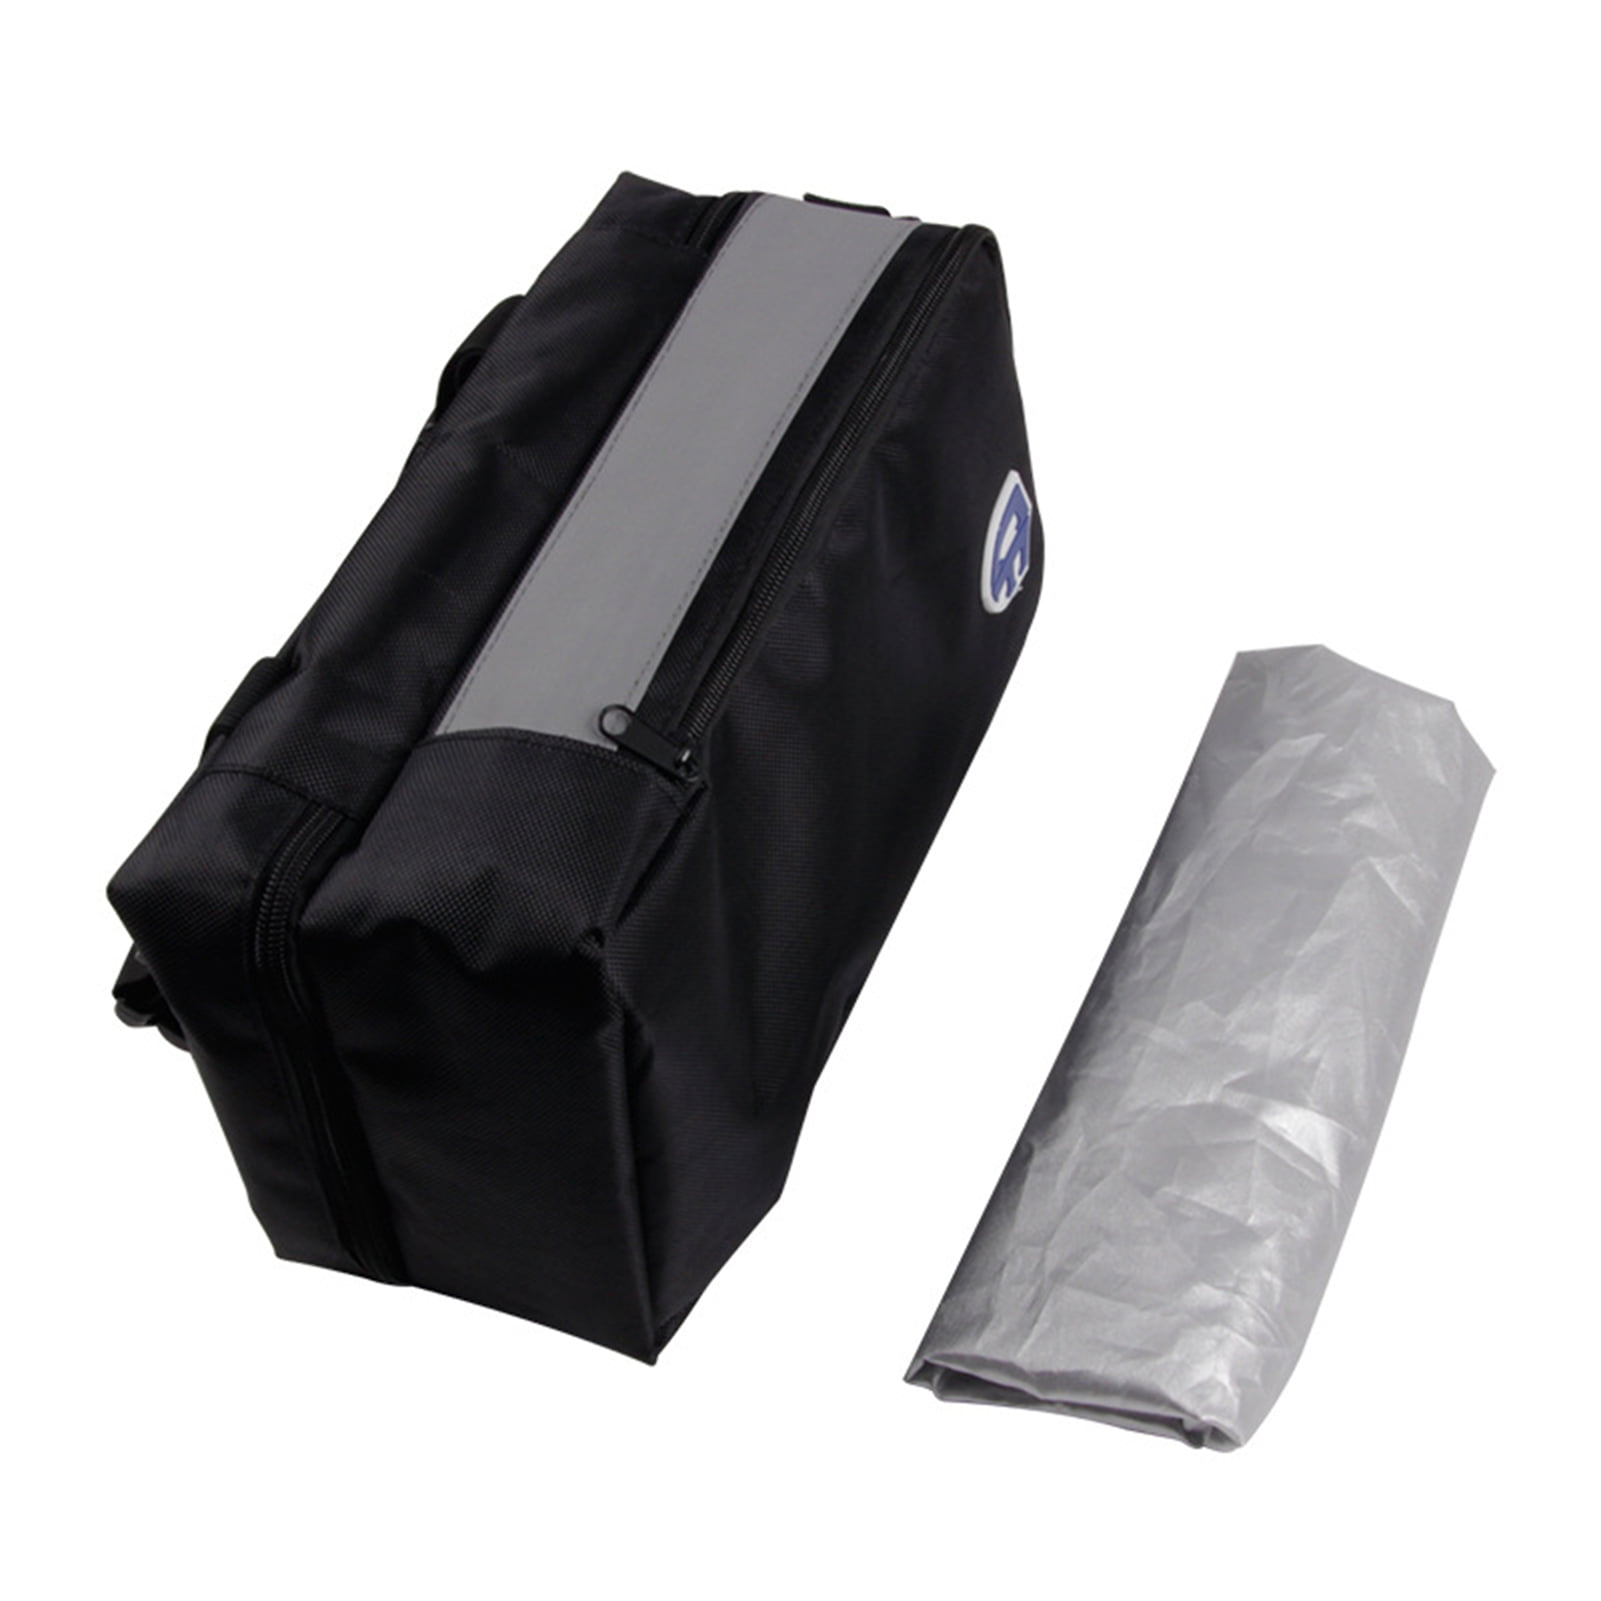 Black Motorcycle Bike Luggage Bag Rear Seat Helmet Pack Waterproof Oxford Cloth 